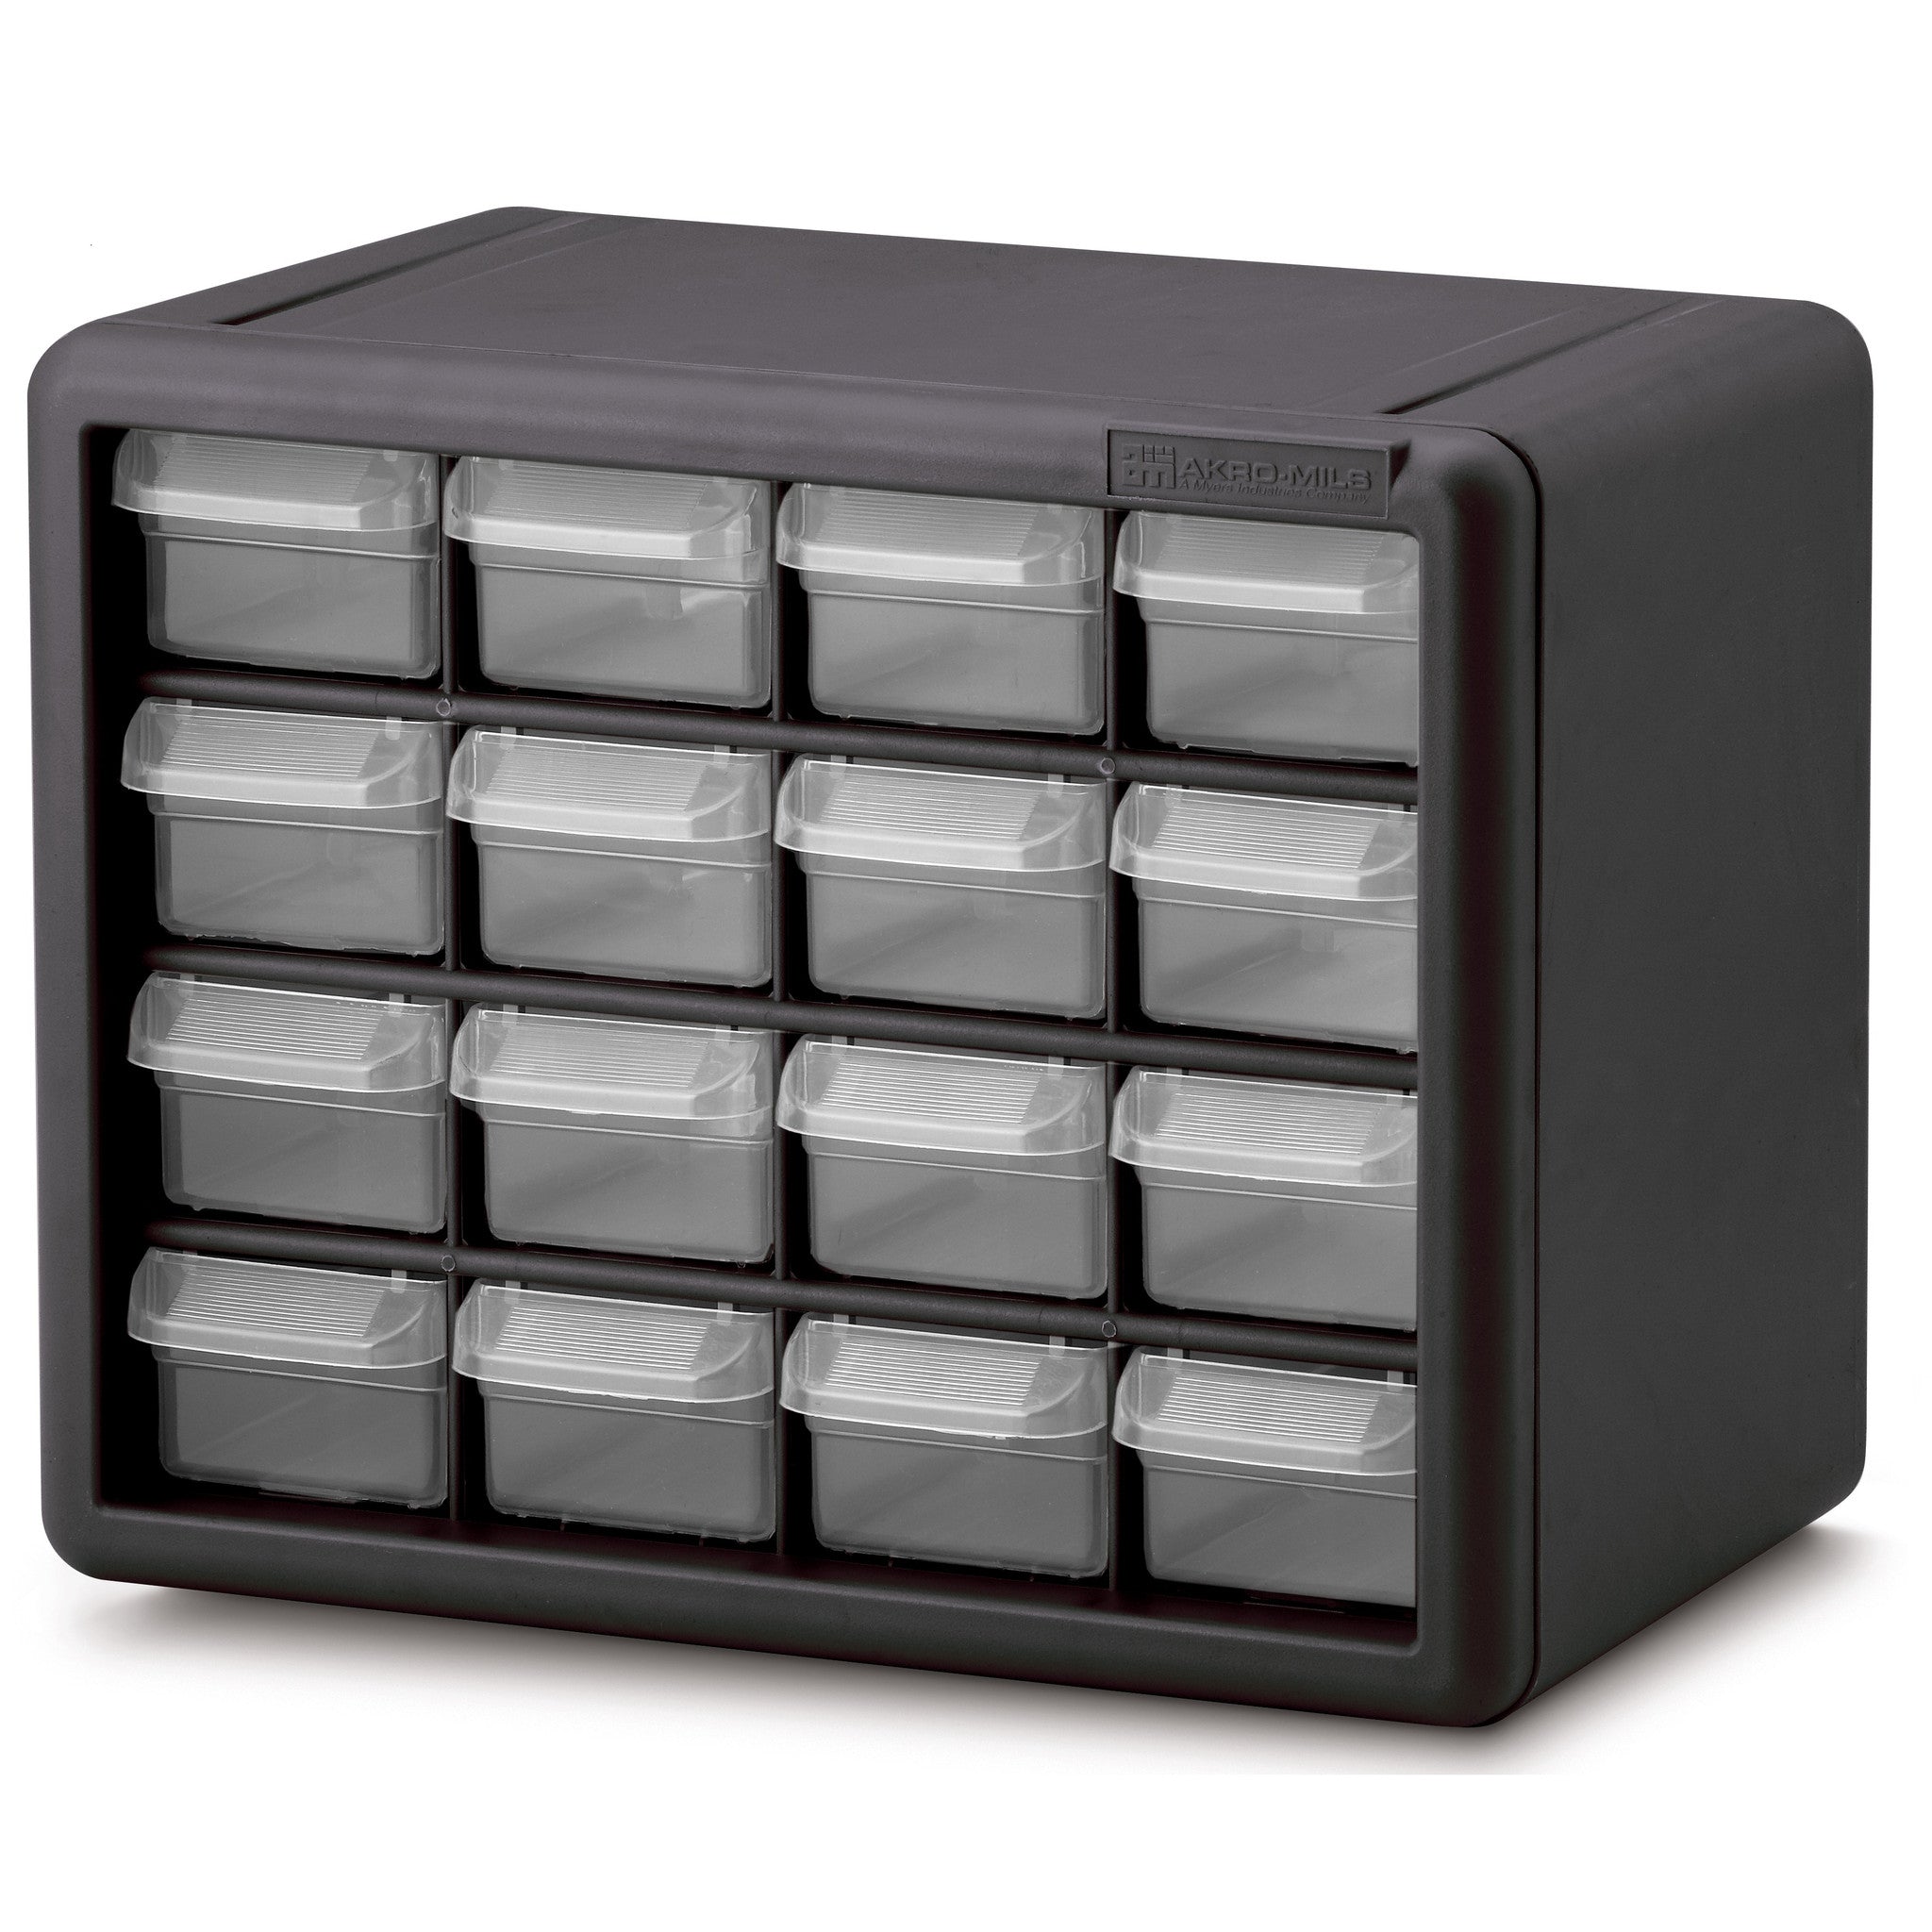 16 Drawer Storage Cabinet | Arteza